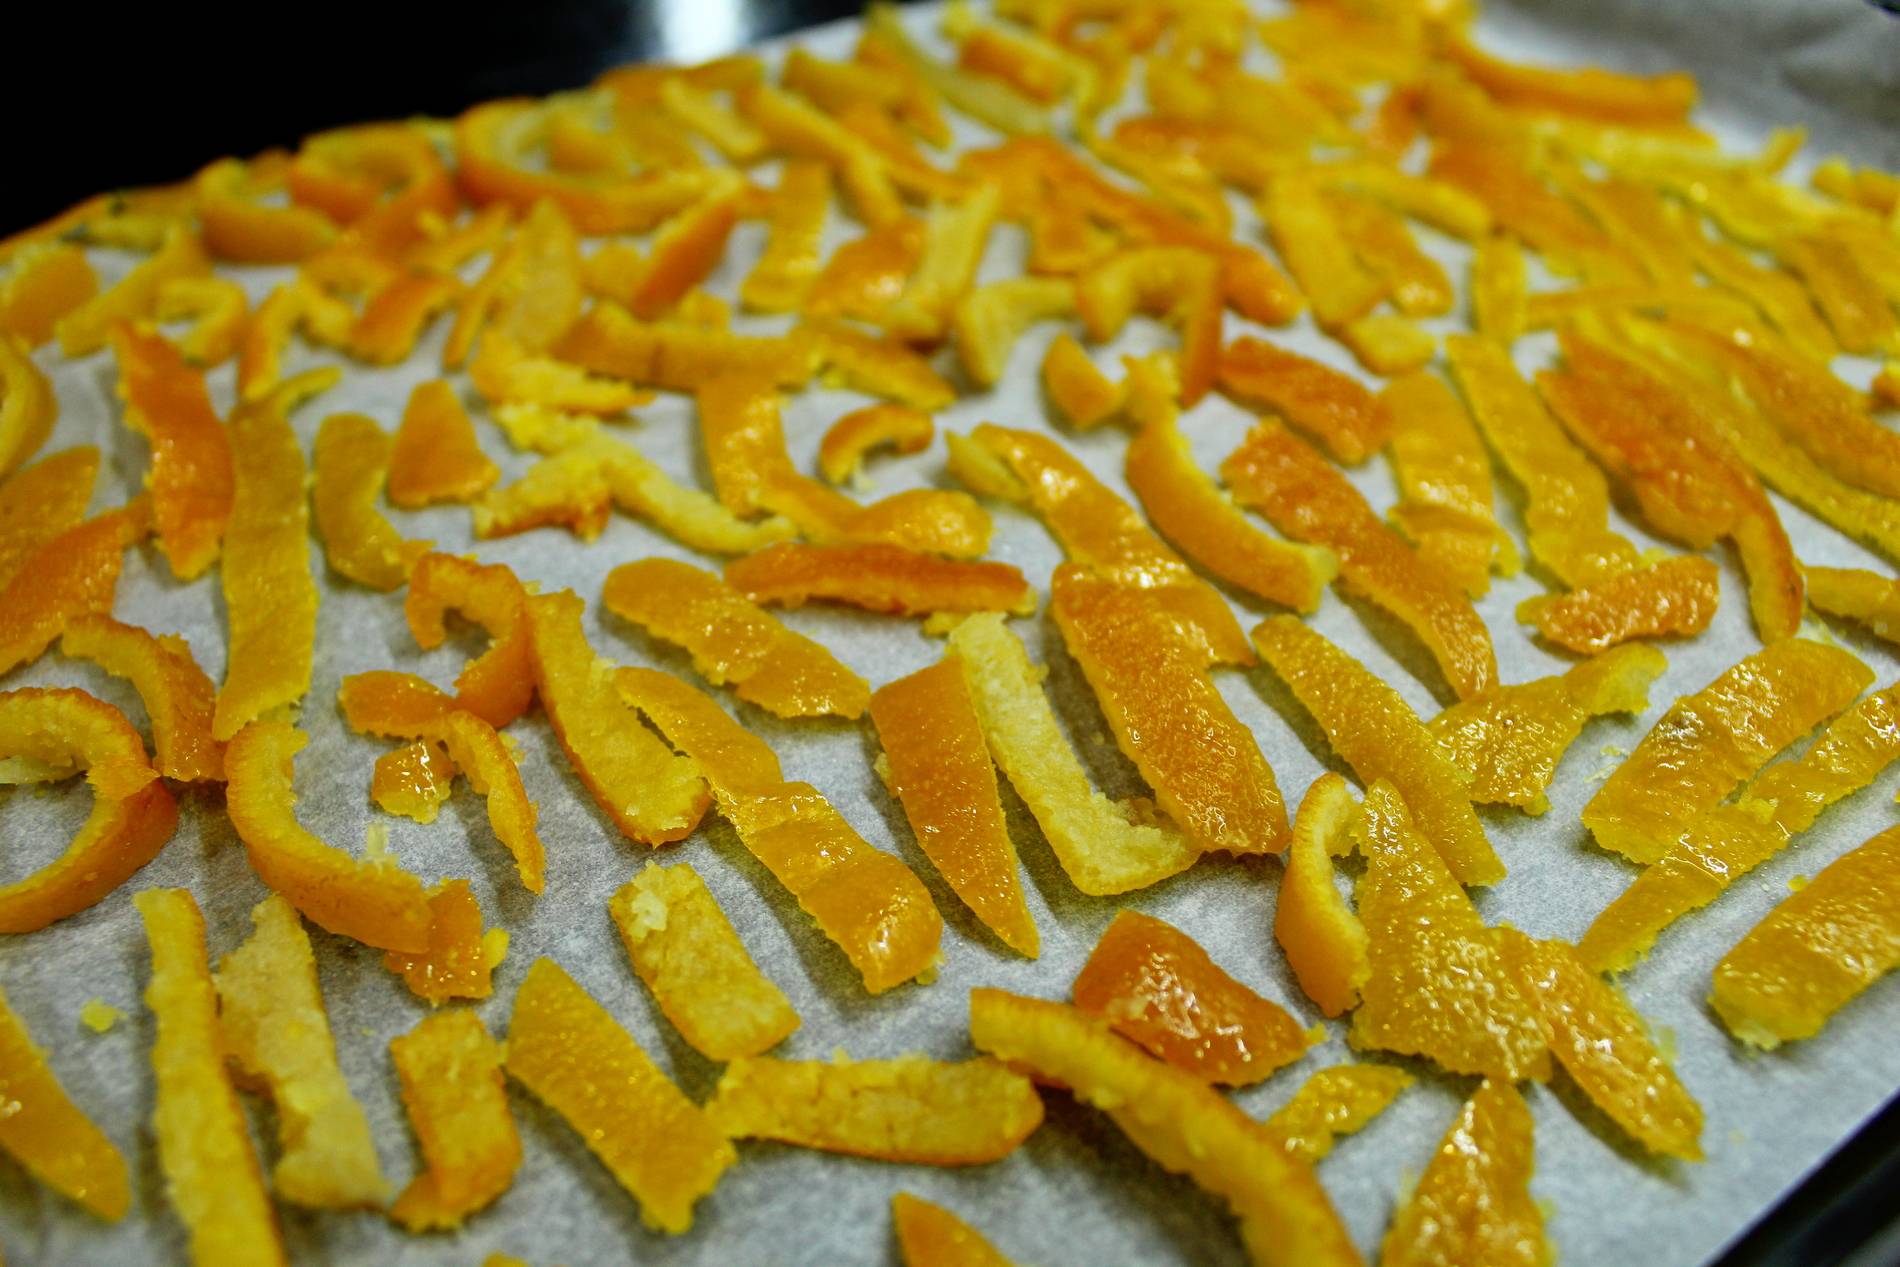 Как сделать цукаты из апельсиновых корок своими руками